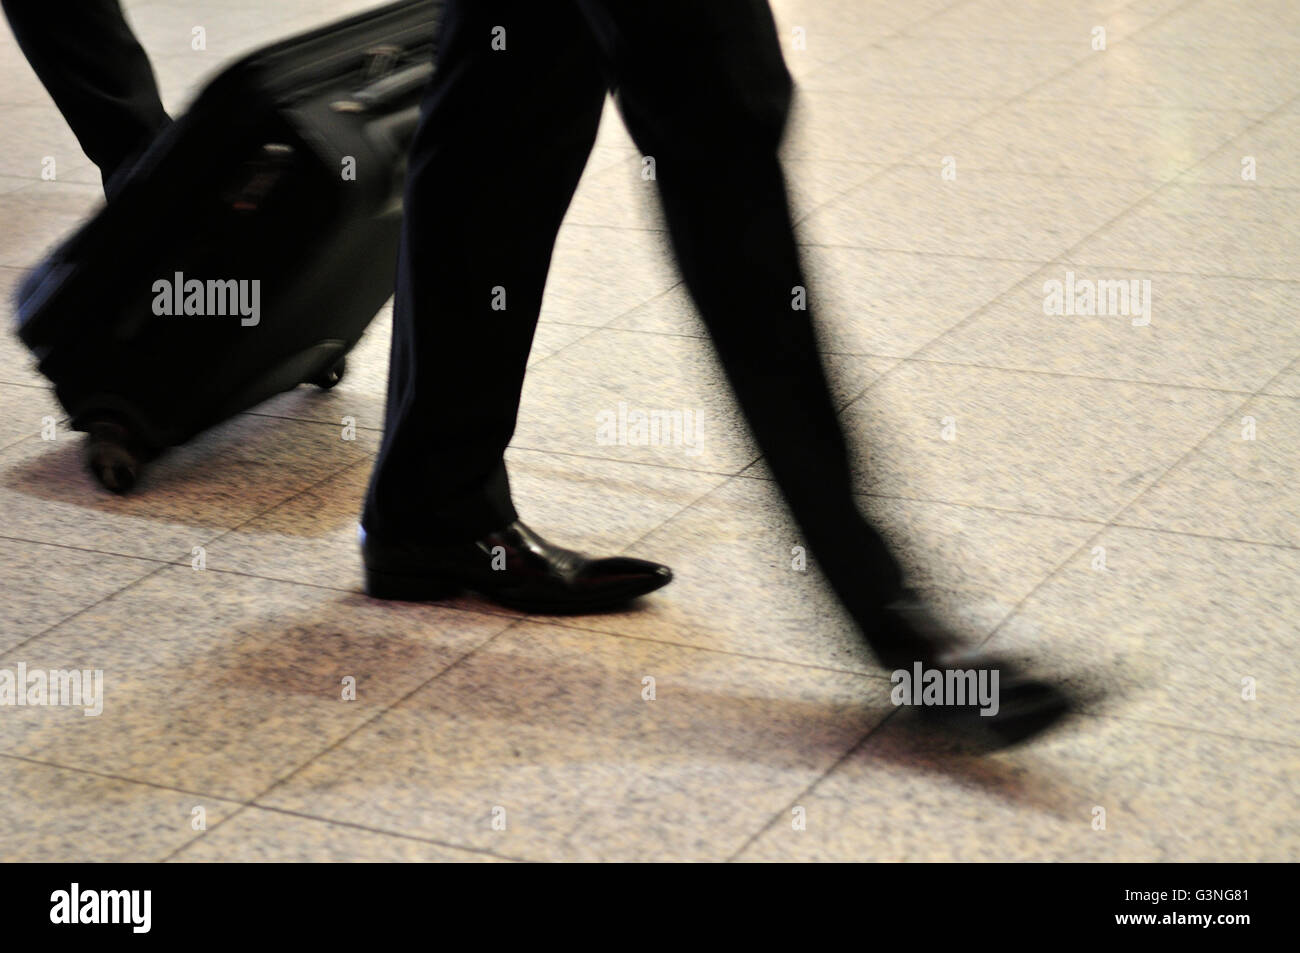 Resumen de hombre caminando tirando de maleta con ruedas de movimiento borrosa Foto de stock